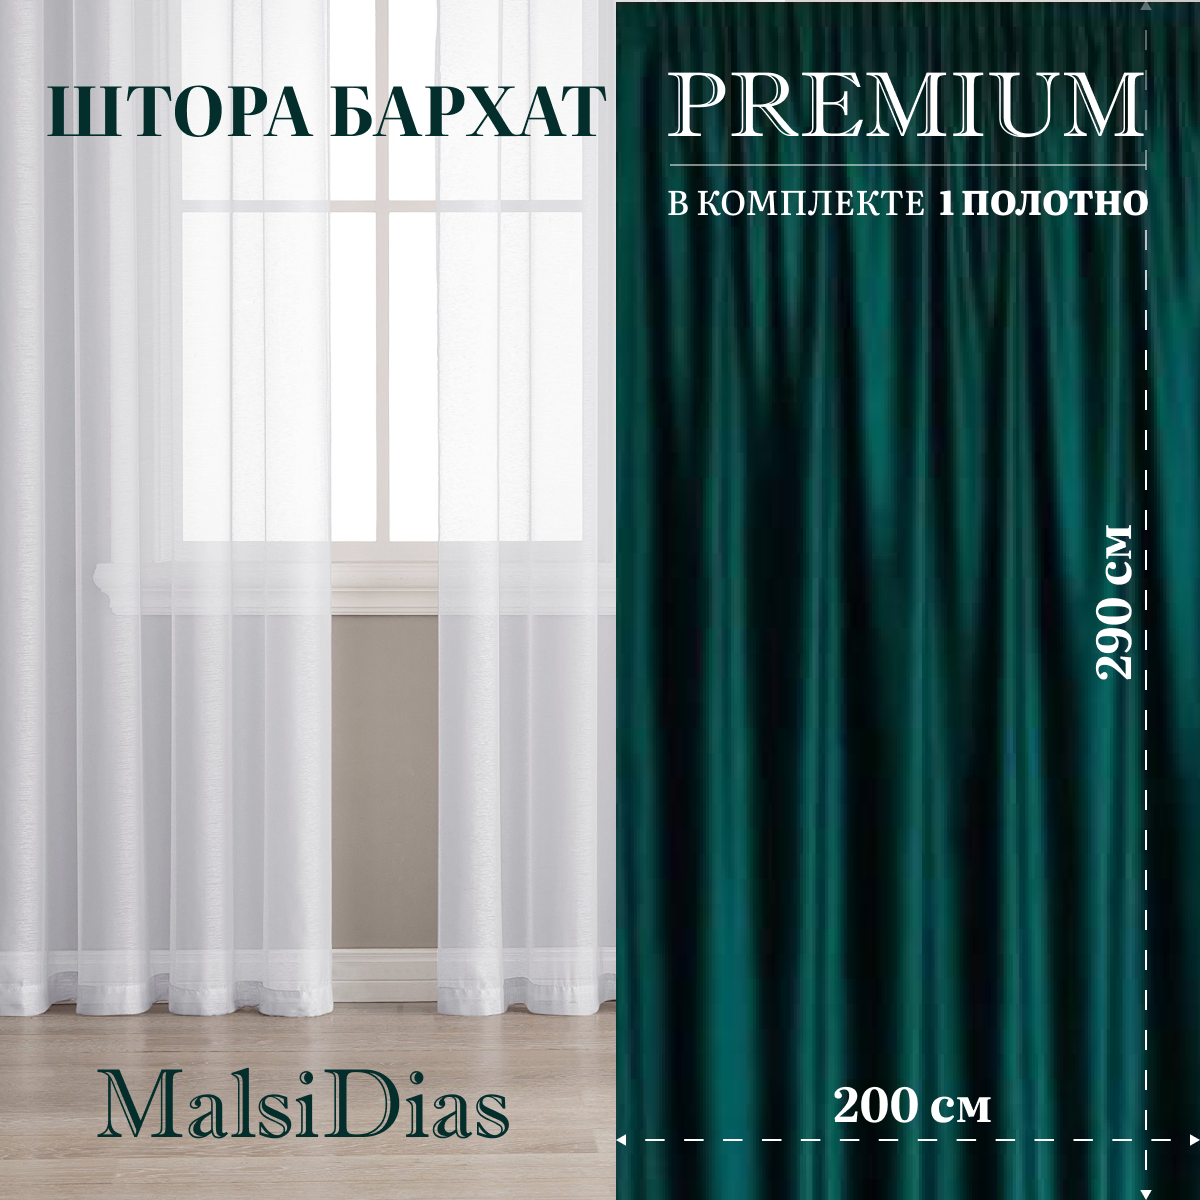 Штора бархат блэкаут MalsiDias 290х200, темно-зеленый. Портьера на шторной ленте. Шторы для комнаты, гостиной, кухни.